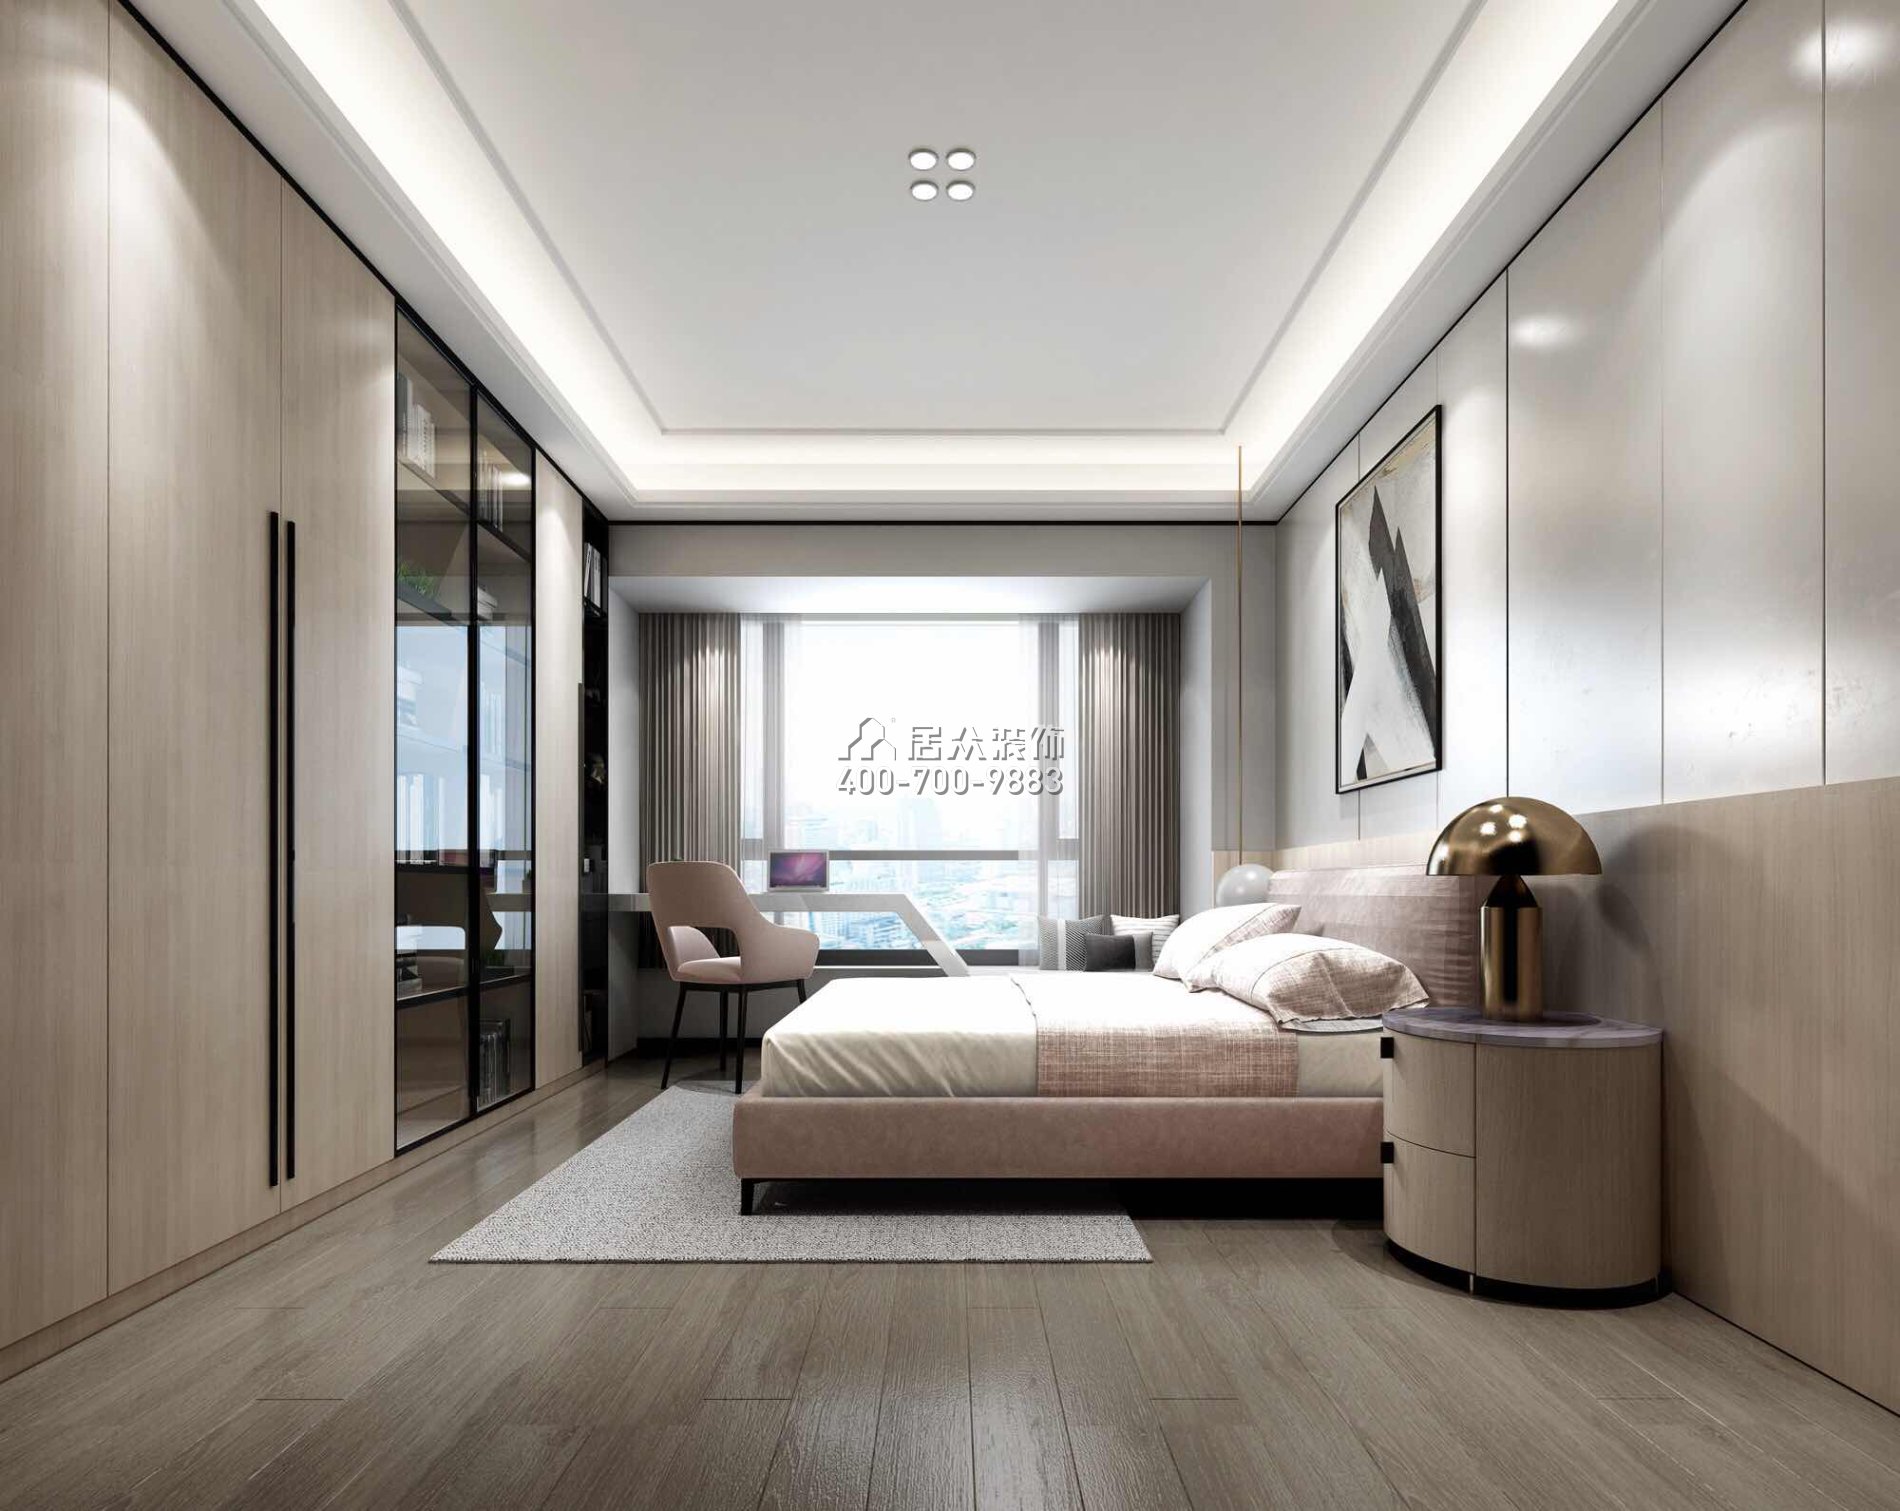 香山美墅四期203平方米现代简约风格平层户型卧室装修效果图